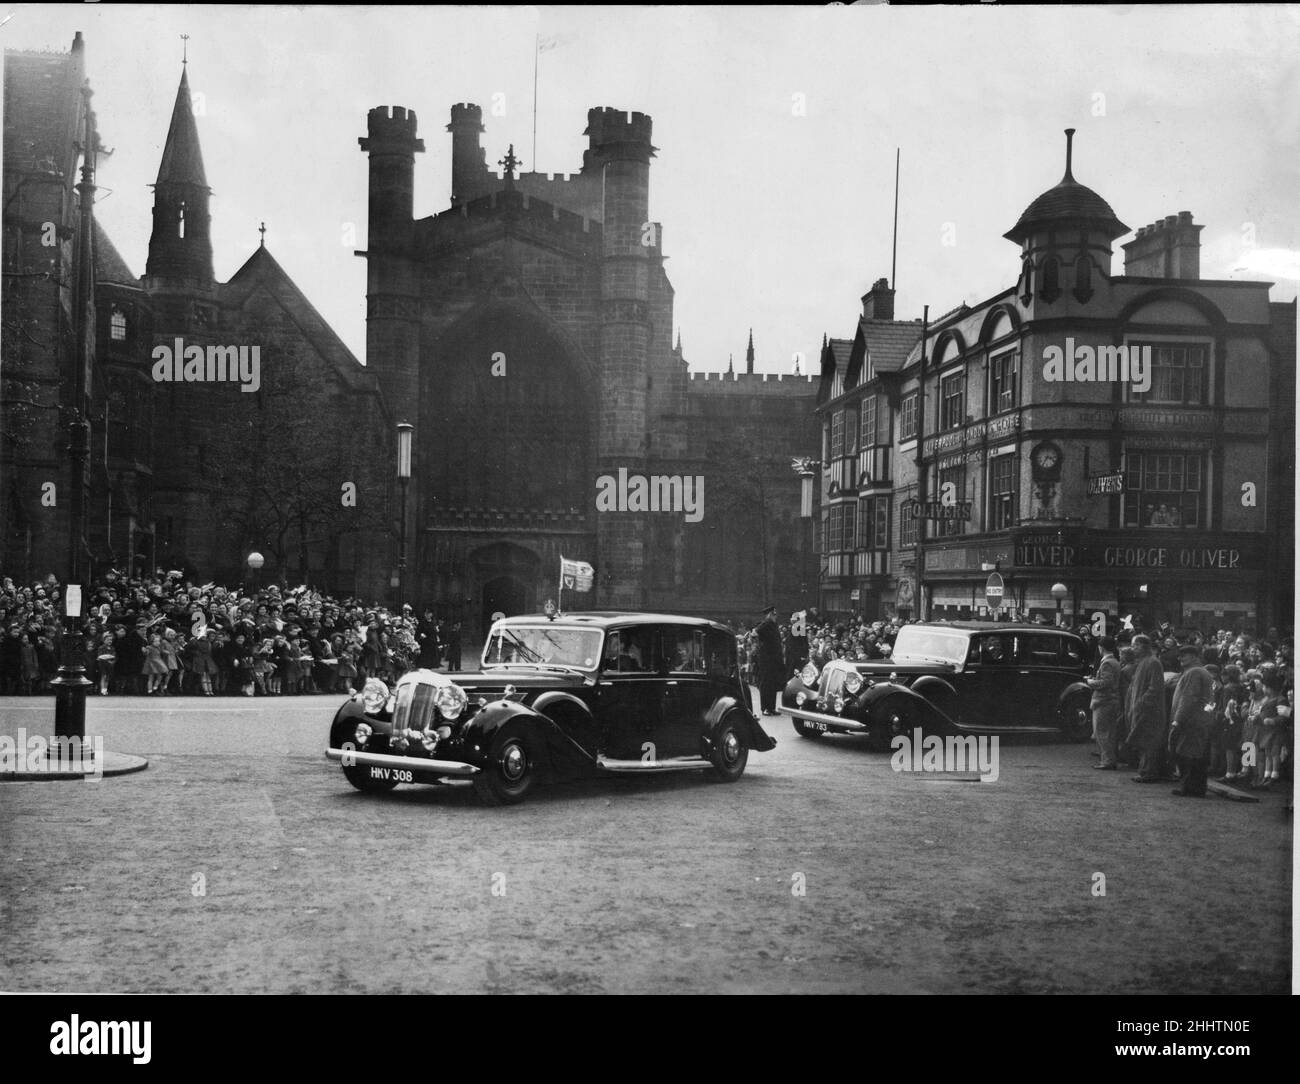 Prinzessin Elizabeth in Chester.das königliche Auto bei der Ankunft in der Kathedrale, Chester. Die Prinzessin würde innerhalb eines Jahres nach Aufnahme dieses Bildes zur Königin werden. Bild aufgenommen am 28th. April 1951 Stockfoto